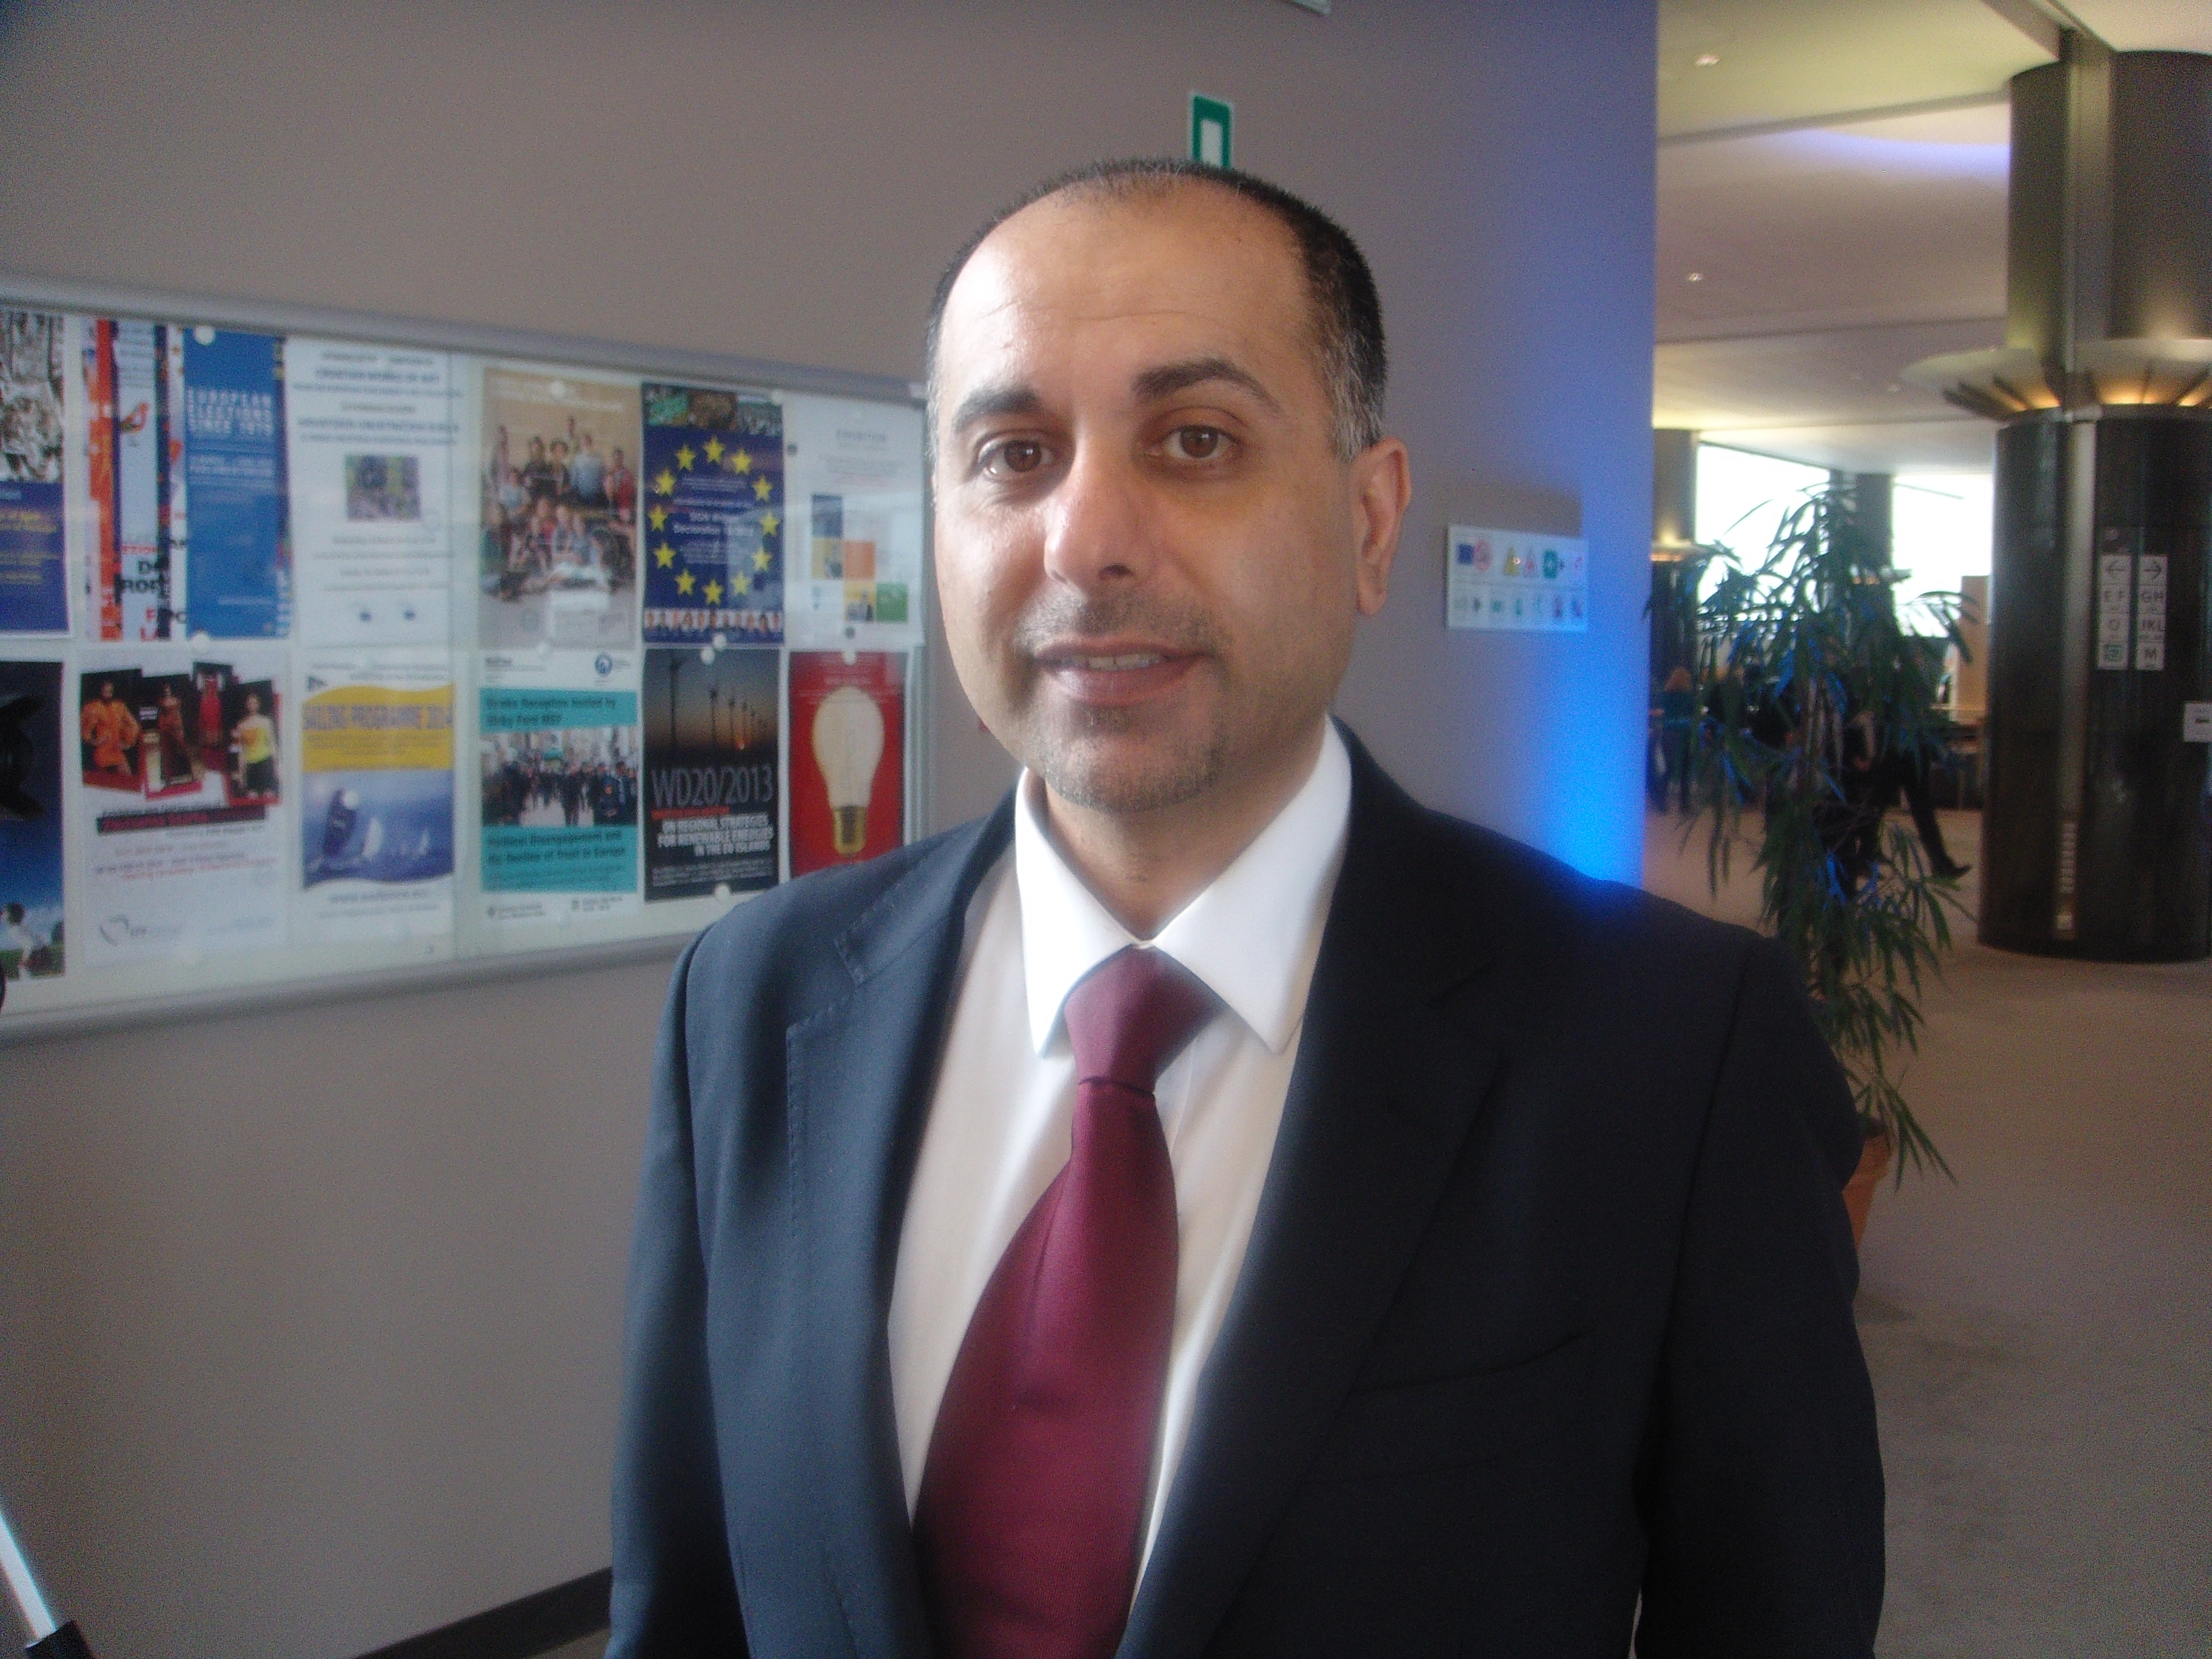 British Member of the European Parliament (MEP) Dr. Sajjad Karim